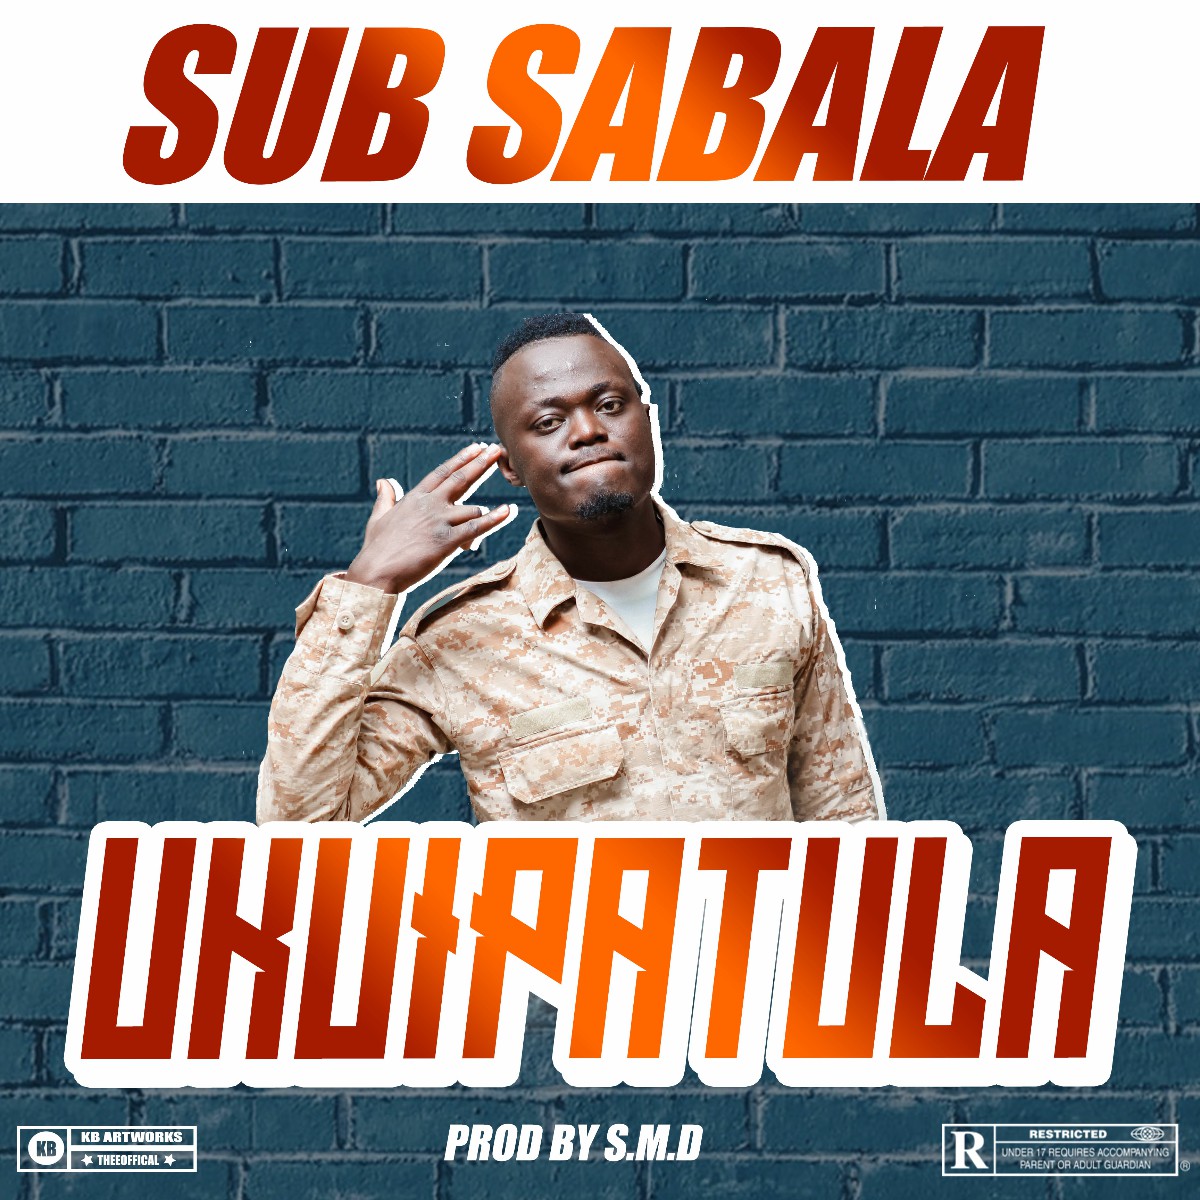 Sub Sabala - Ukuipatula (Prod. S.M.D)